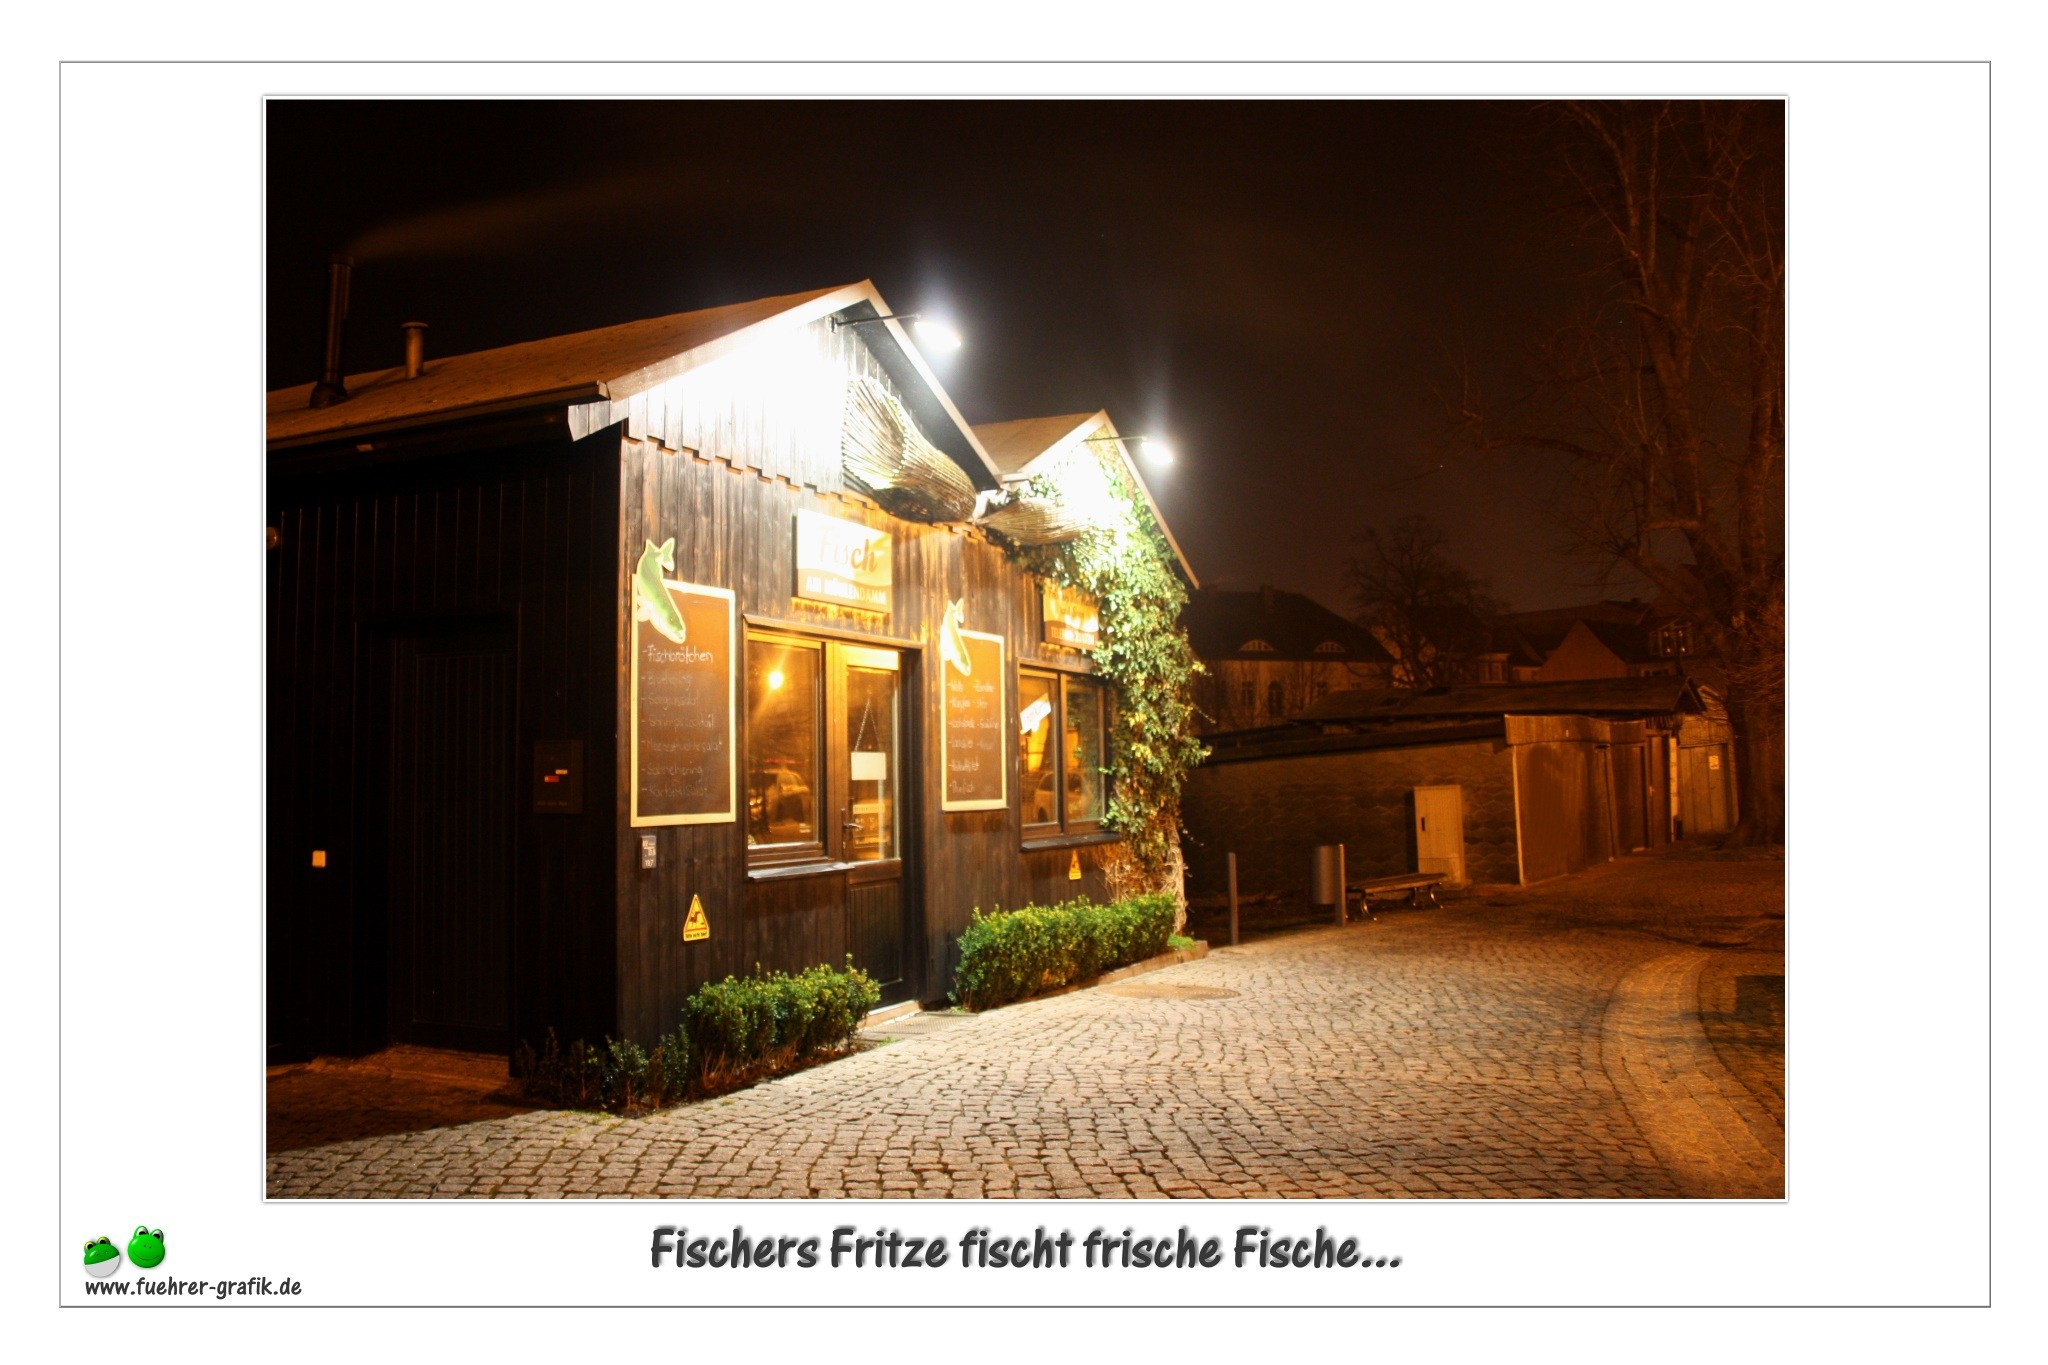 Fischers Fritze ....